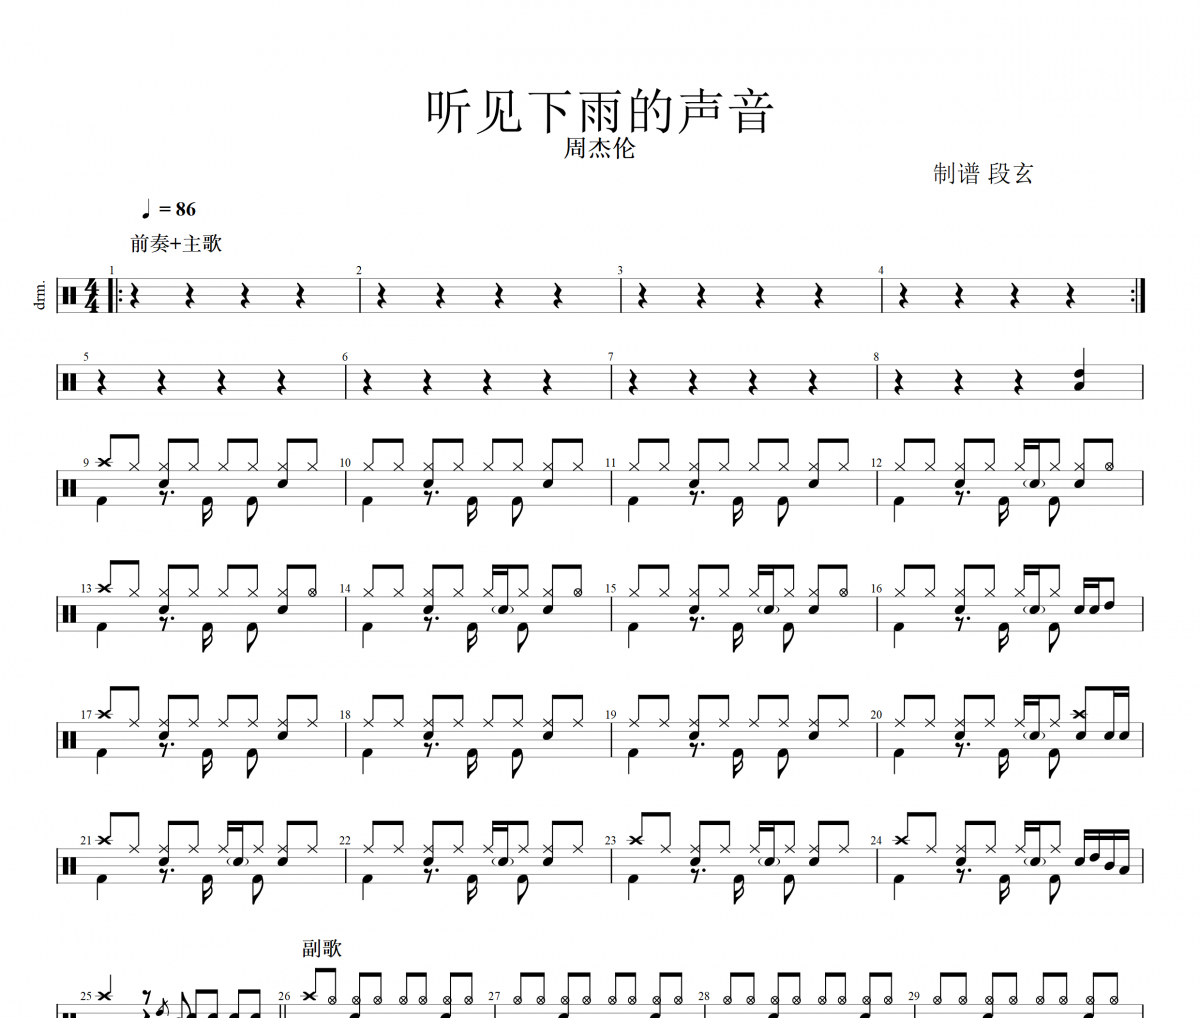 钢琴谱《听见下雨的声音》用简单数字版制谱 - 白痴弹法 - 单手双手钢琴谱 - 钢琴简谱